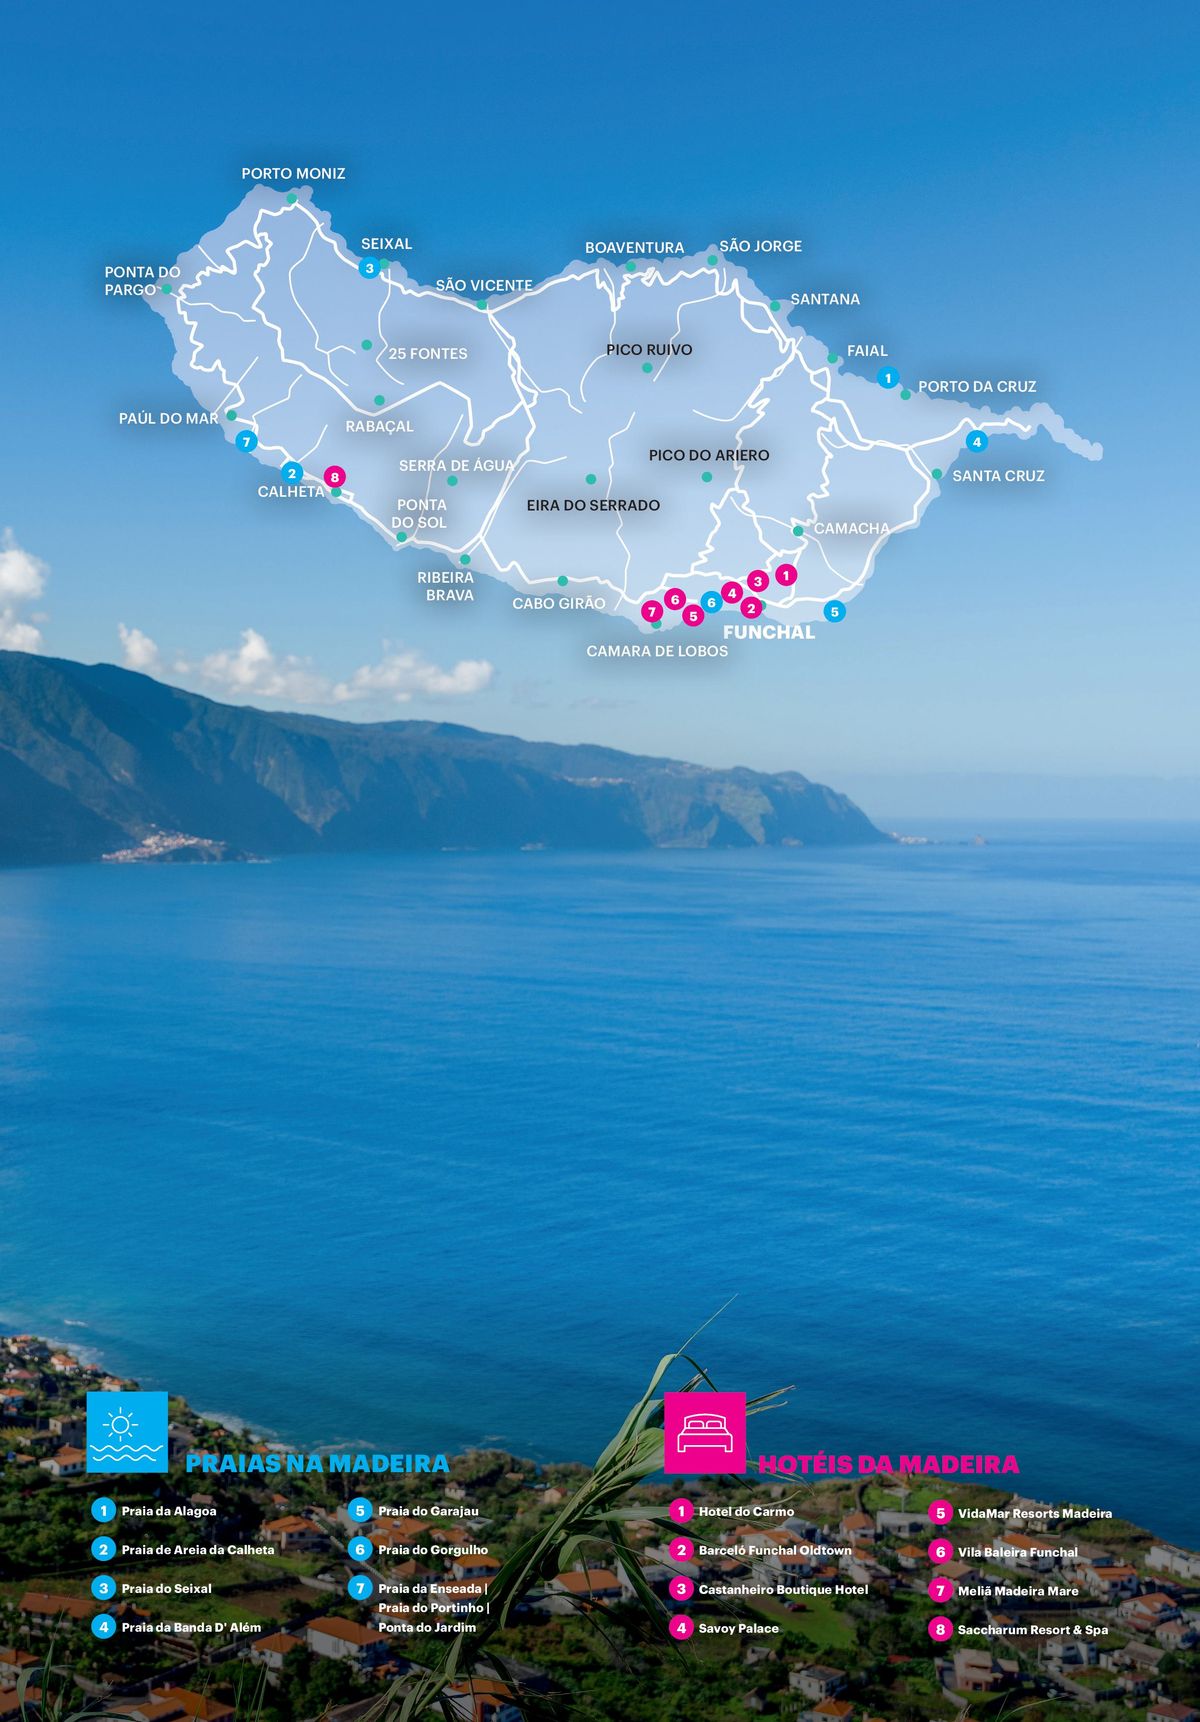 Pacote de viagem para Madeira: Pico Ruivo, Pico do Arieiro, Eira do Serrado